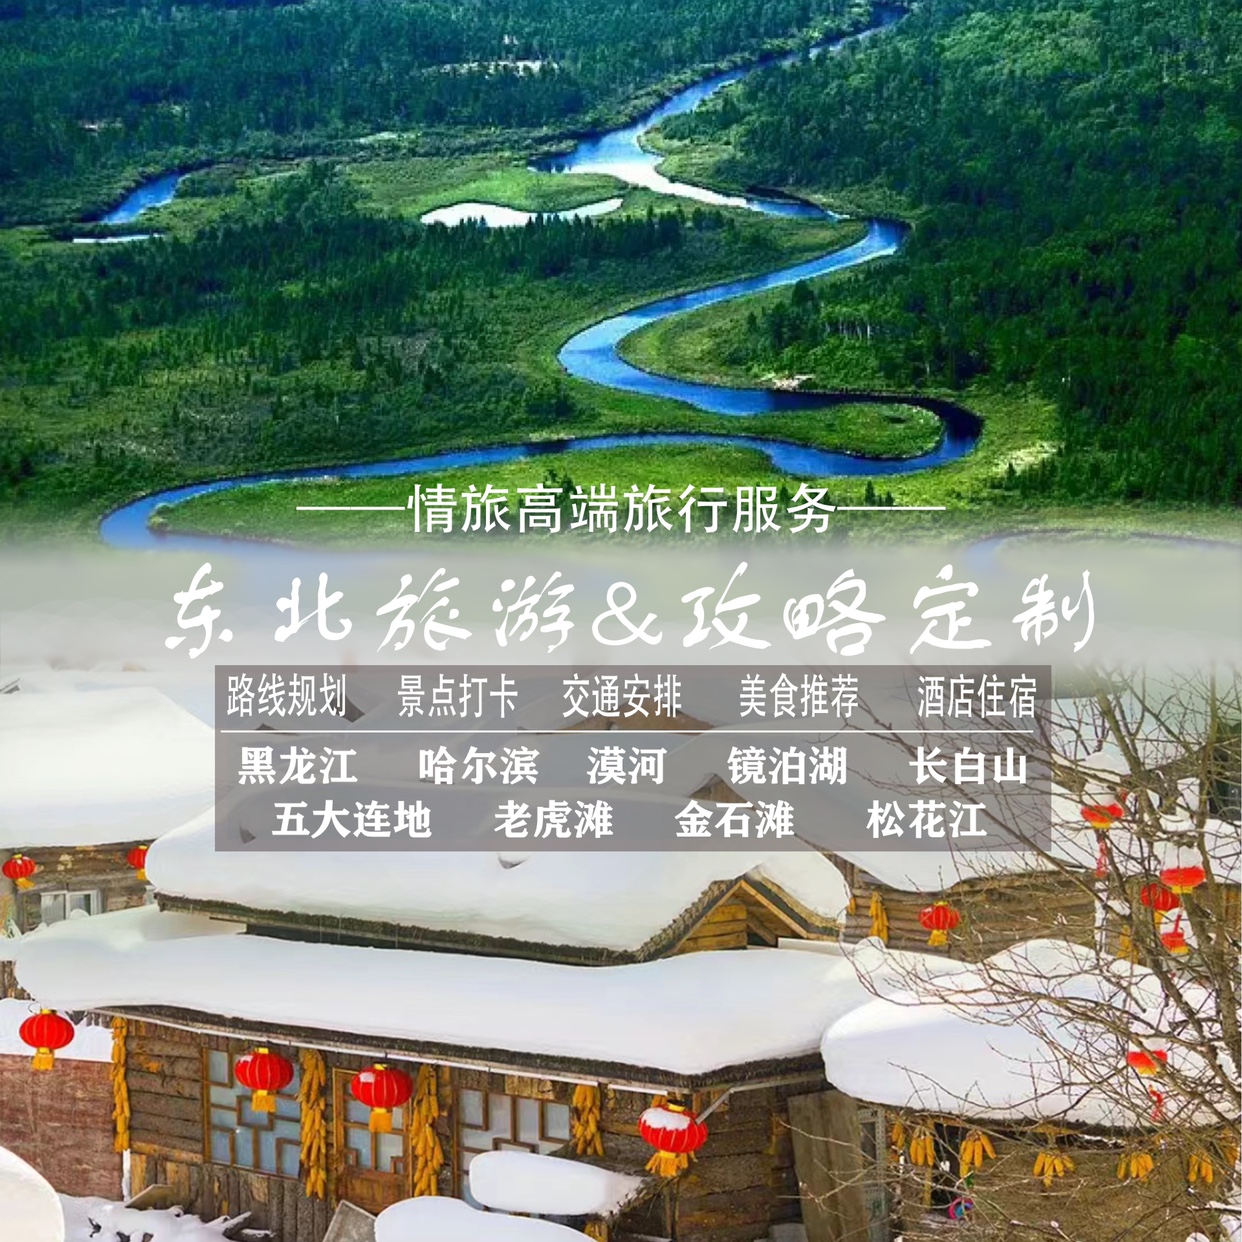 大连延吉长白山东北哈尔滨雪乡漠河自由行自驾游攻略定制路线设计